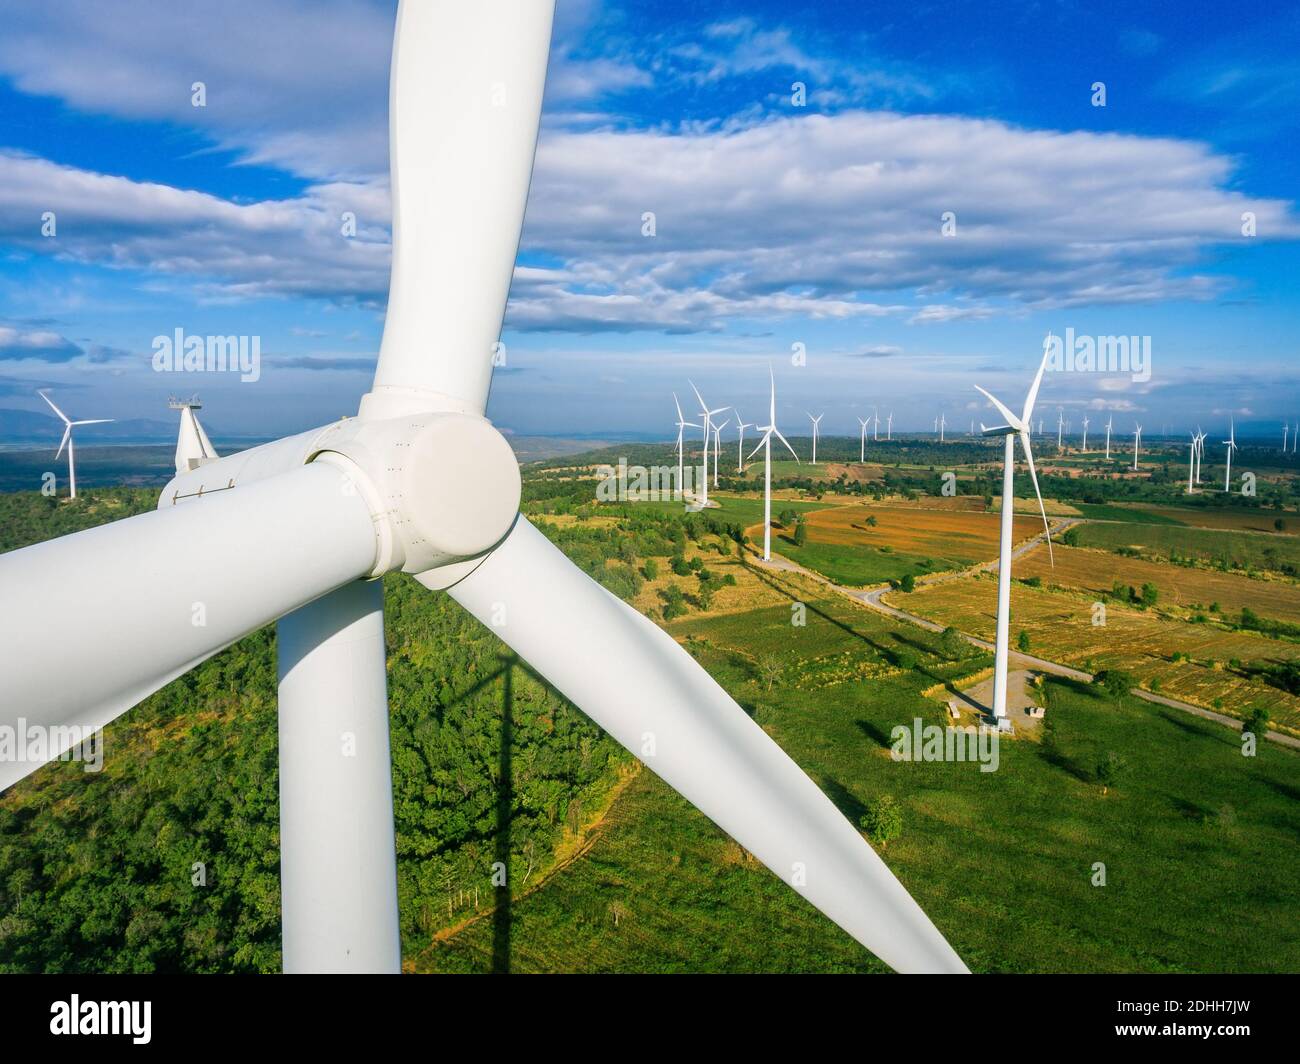 Éolienne depuis la vue aérienne. Développement durable, concept respectueux de l'environnement. L'éolienne donne l'énergie renouvelable, l'énergie durable Banque D'Images